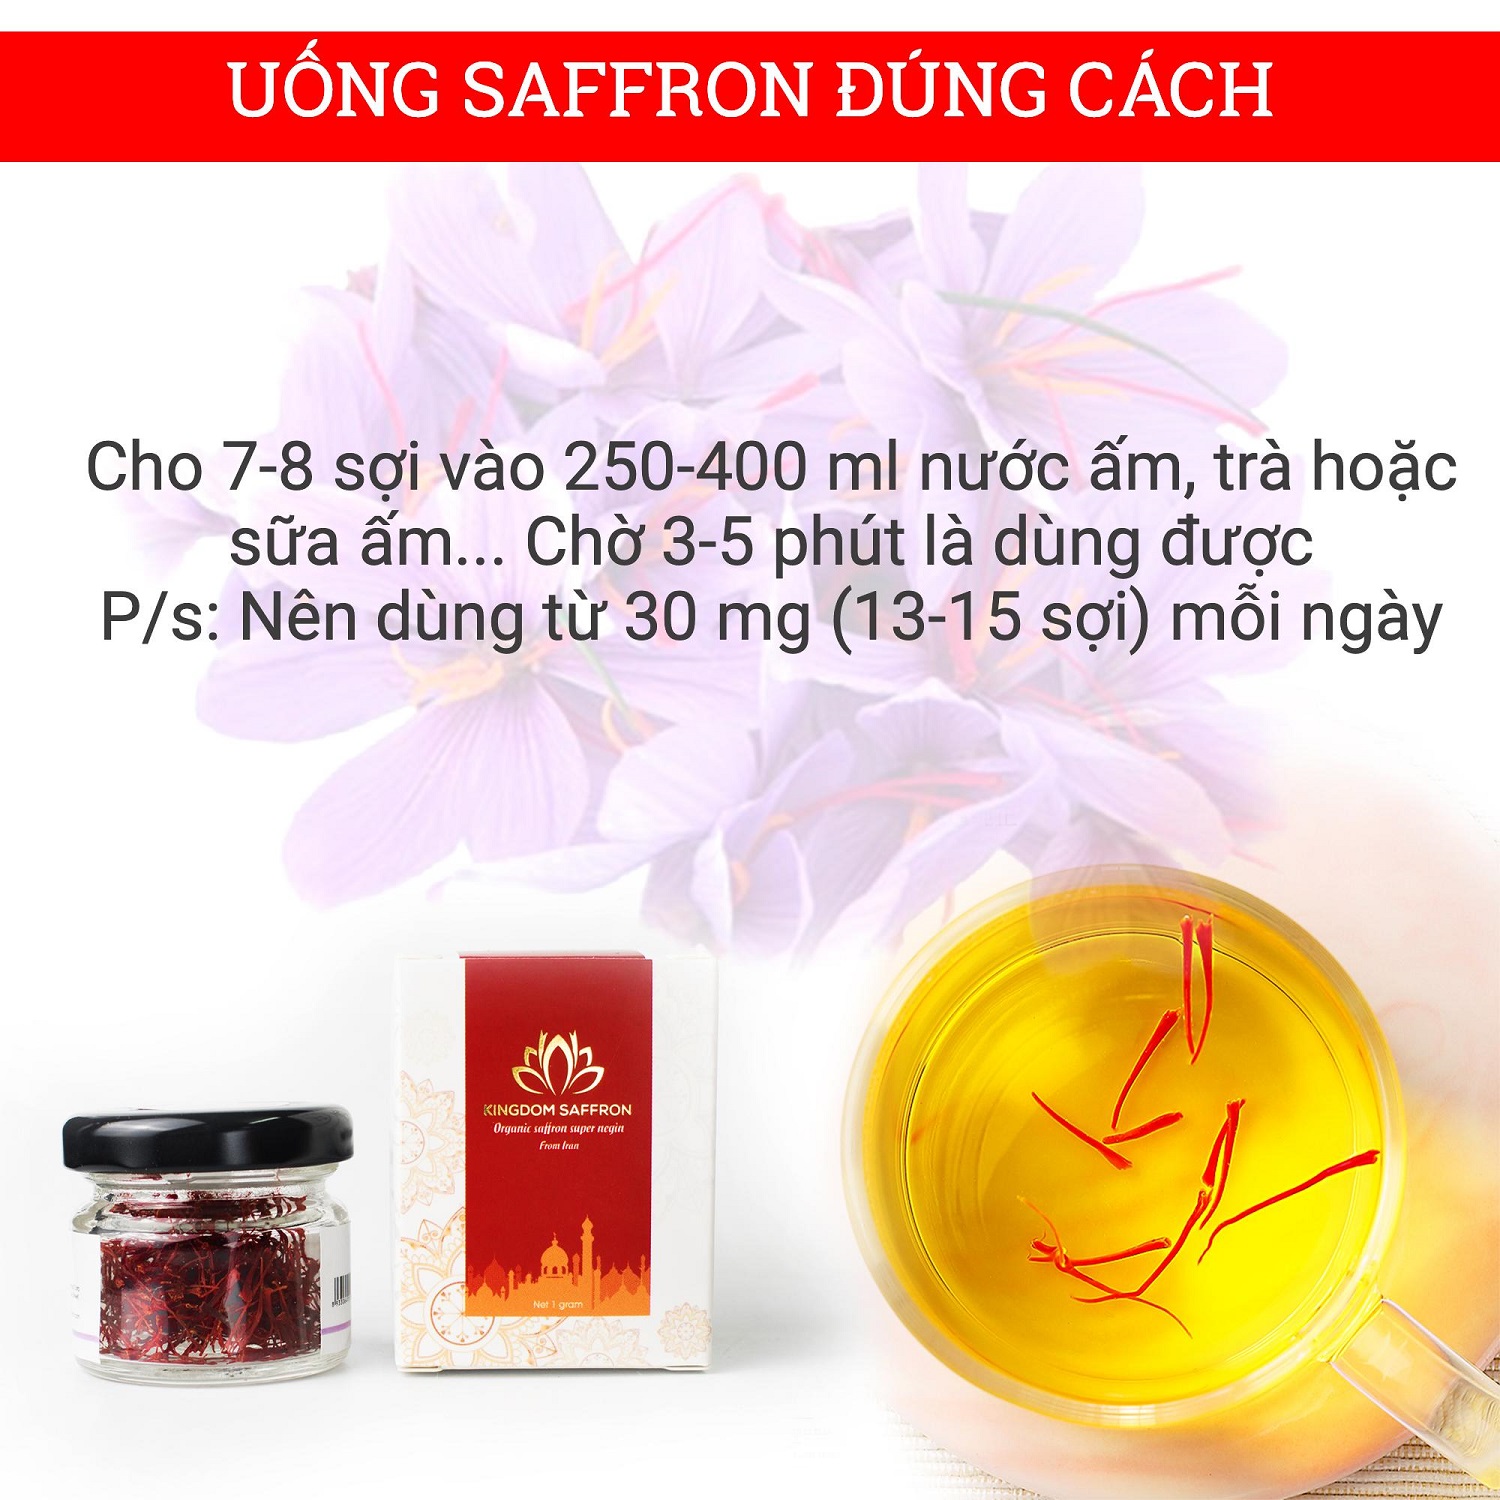 Saffron Kingdom Herb nhụy hoa nghệ tây Iran loại Super Negin thượng hạng chính hãng (mẫu thử hộp 0.1 gram) - Tặng bình nước thủy tinh cao cấp 500 ml